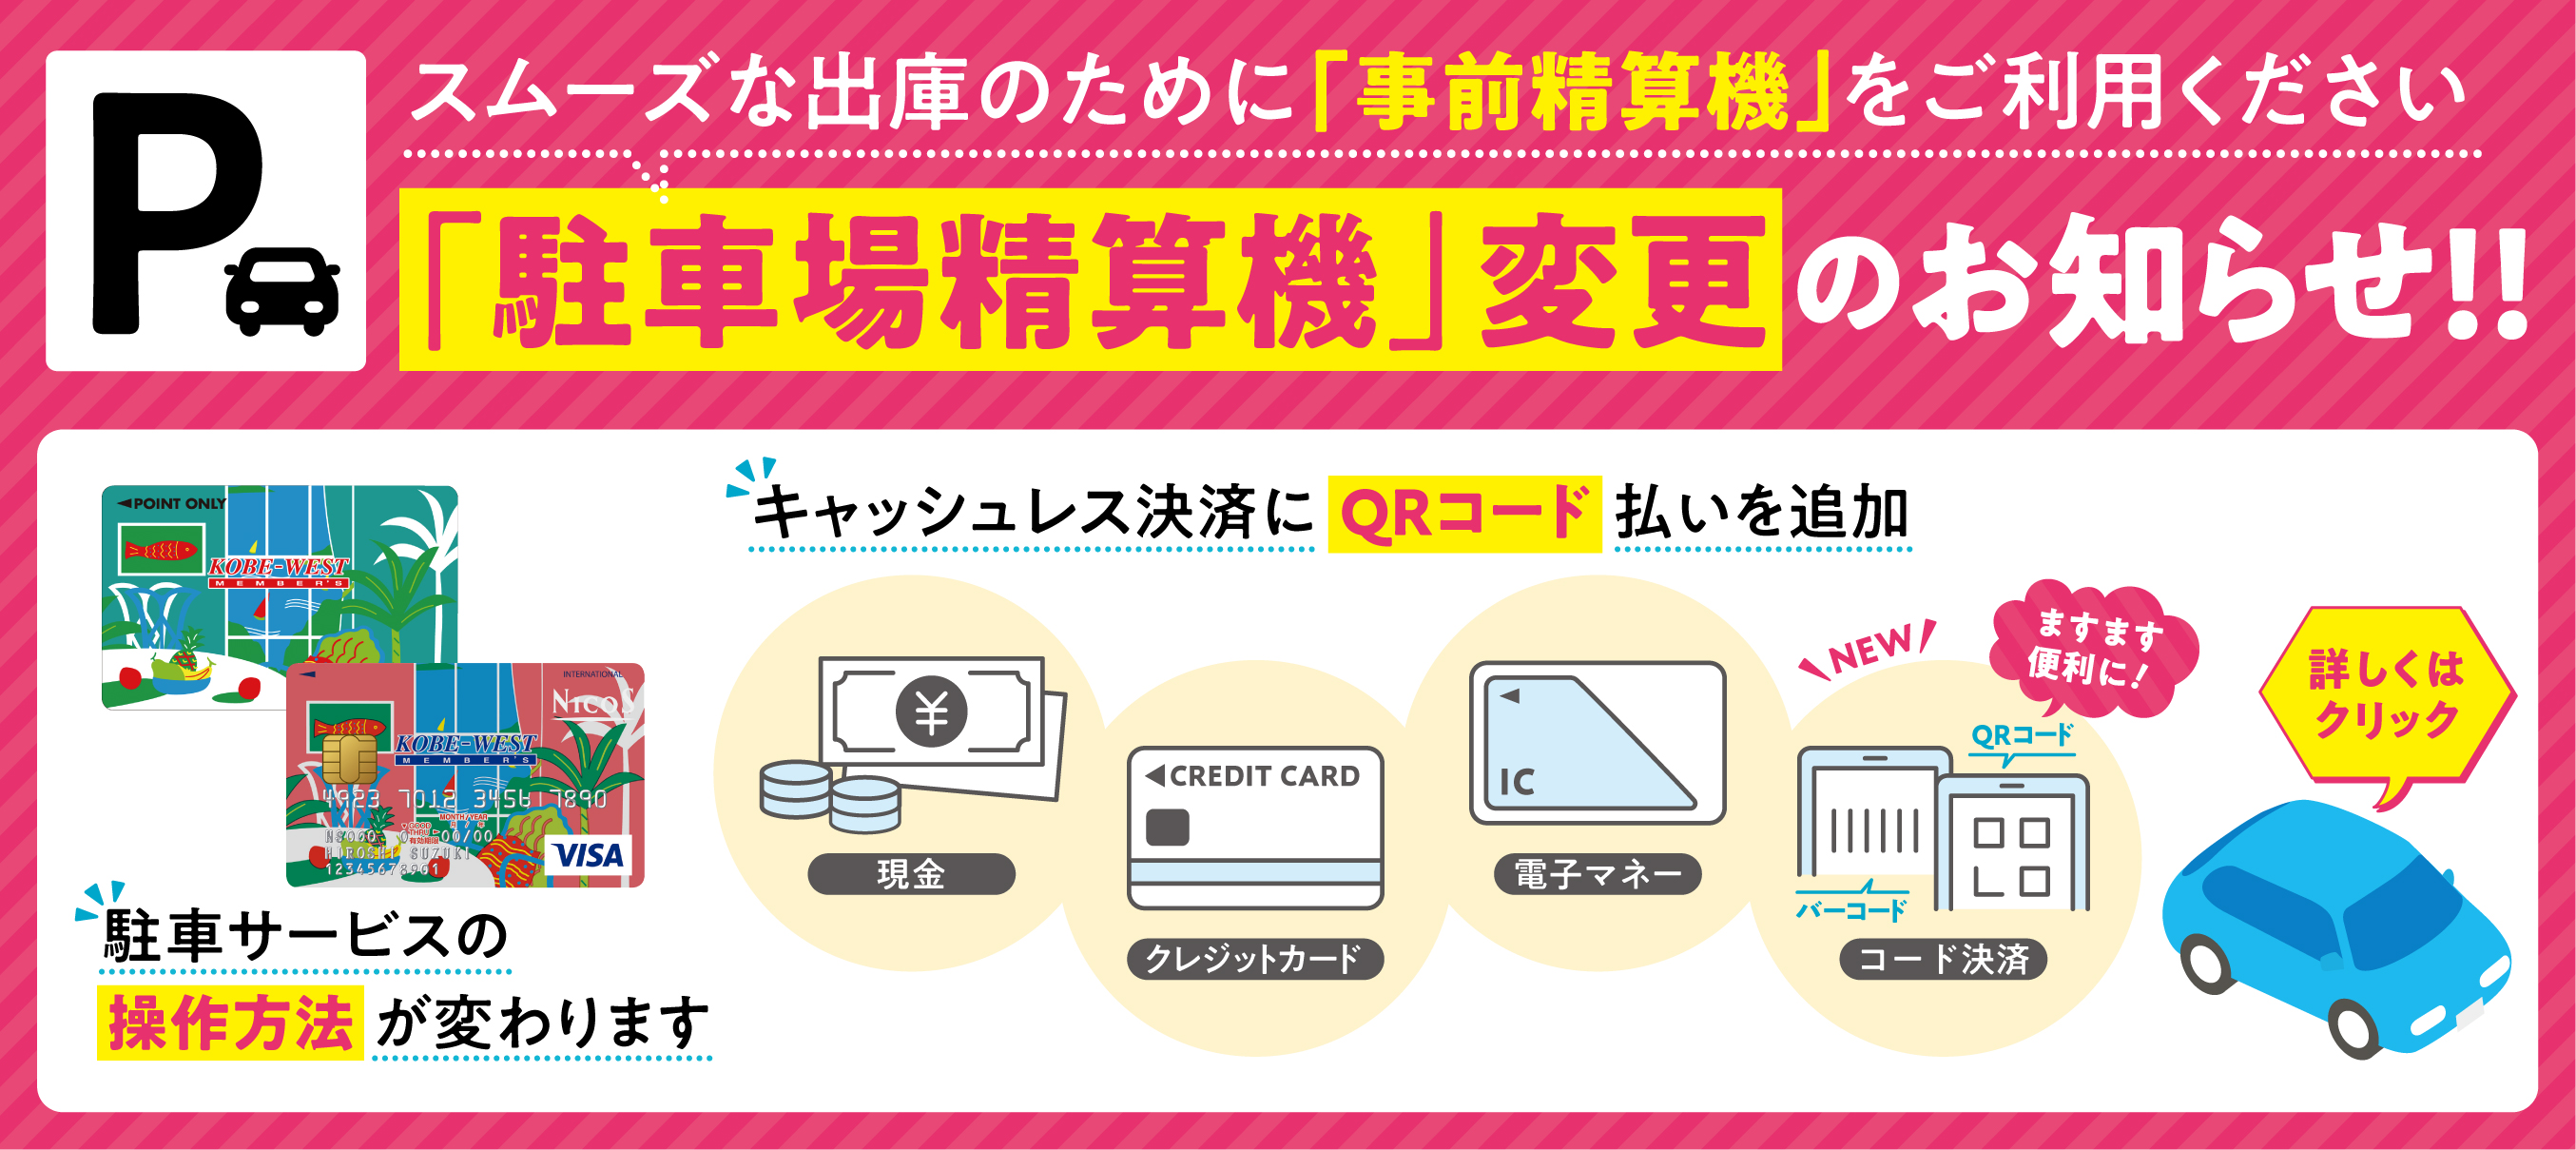 セリオ スライダー画像 神戸ウェストメンバーズカードをお持ちの方へ　駐車場精算機変更のお知らせ